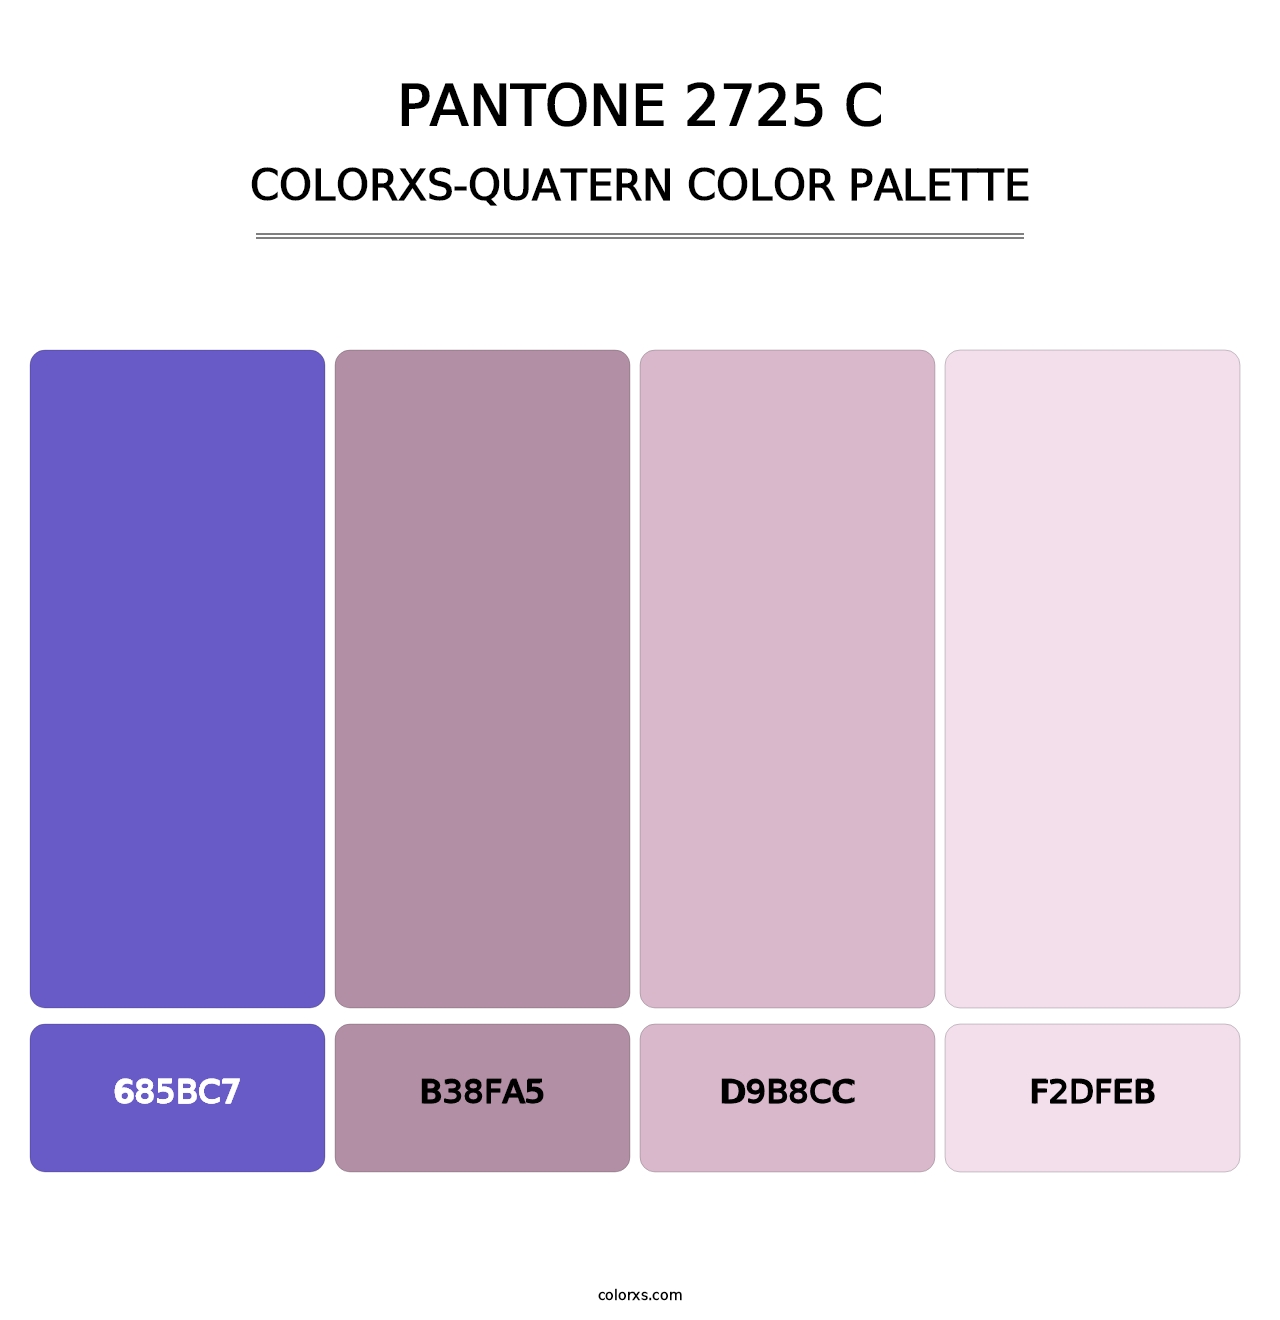 PANTONE 2725 C - Colorxs Quatern Palette